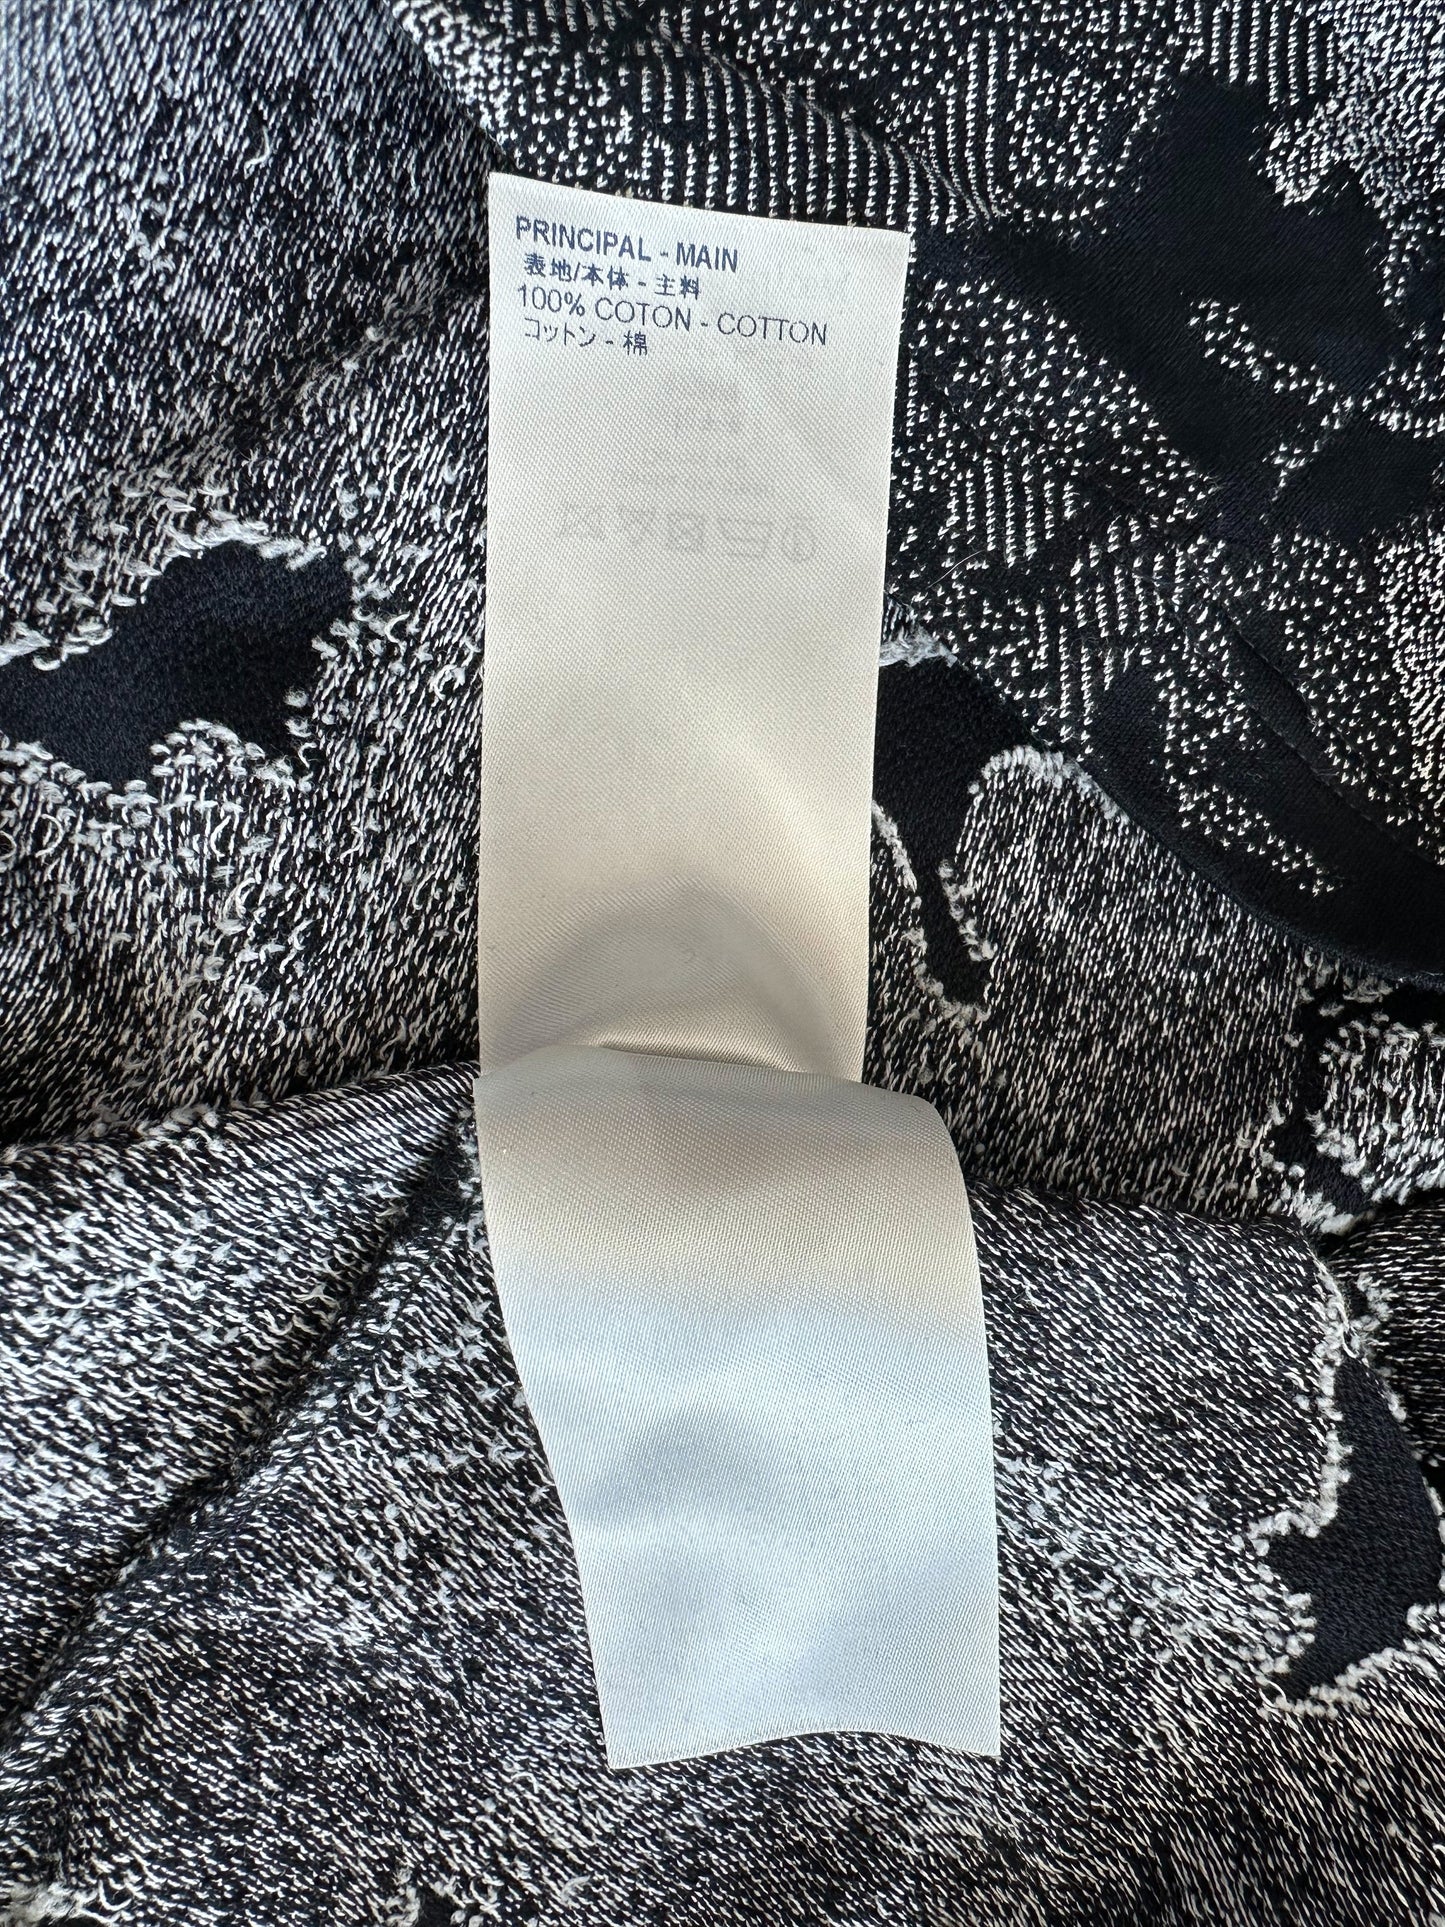 Black Louis Vuitton monogram print on white cotton fabric